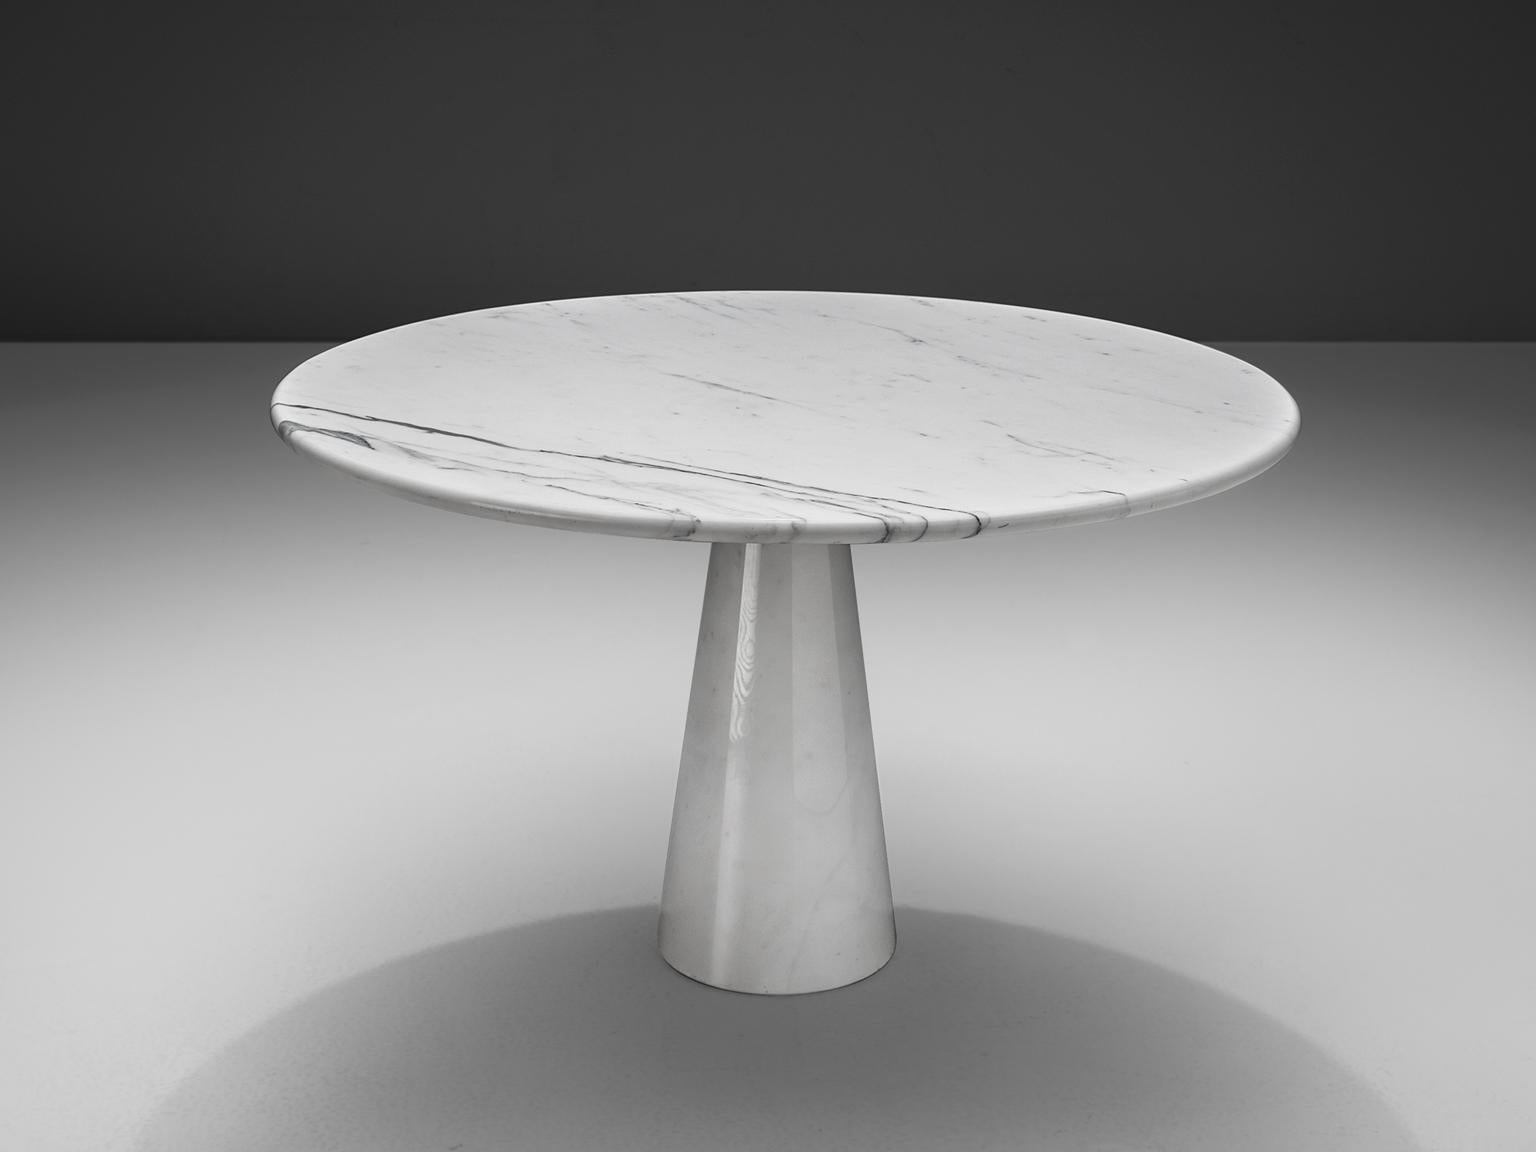 Runder Esstisch:: weißer Marmor:: Europa:: 1970er Jahre. 

Dieser runde Sockeltisch hat eine weiße runde Basis mit kegelförmiger Säule. Die runde Platte ist aus exquisitem weißem Marmor gefertigt. Eine große Harmonie entsteht durch die Verwendung